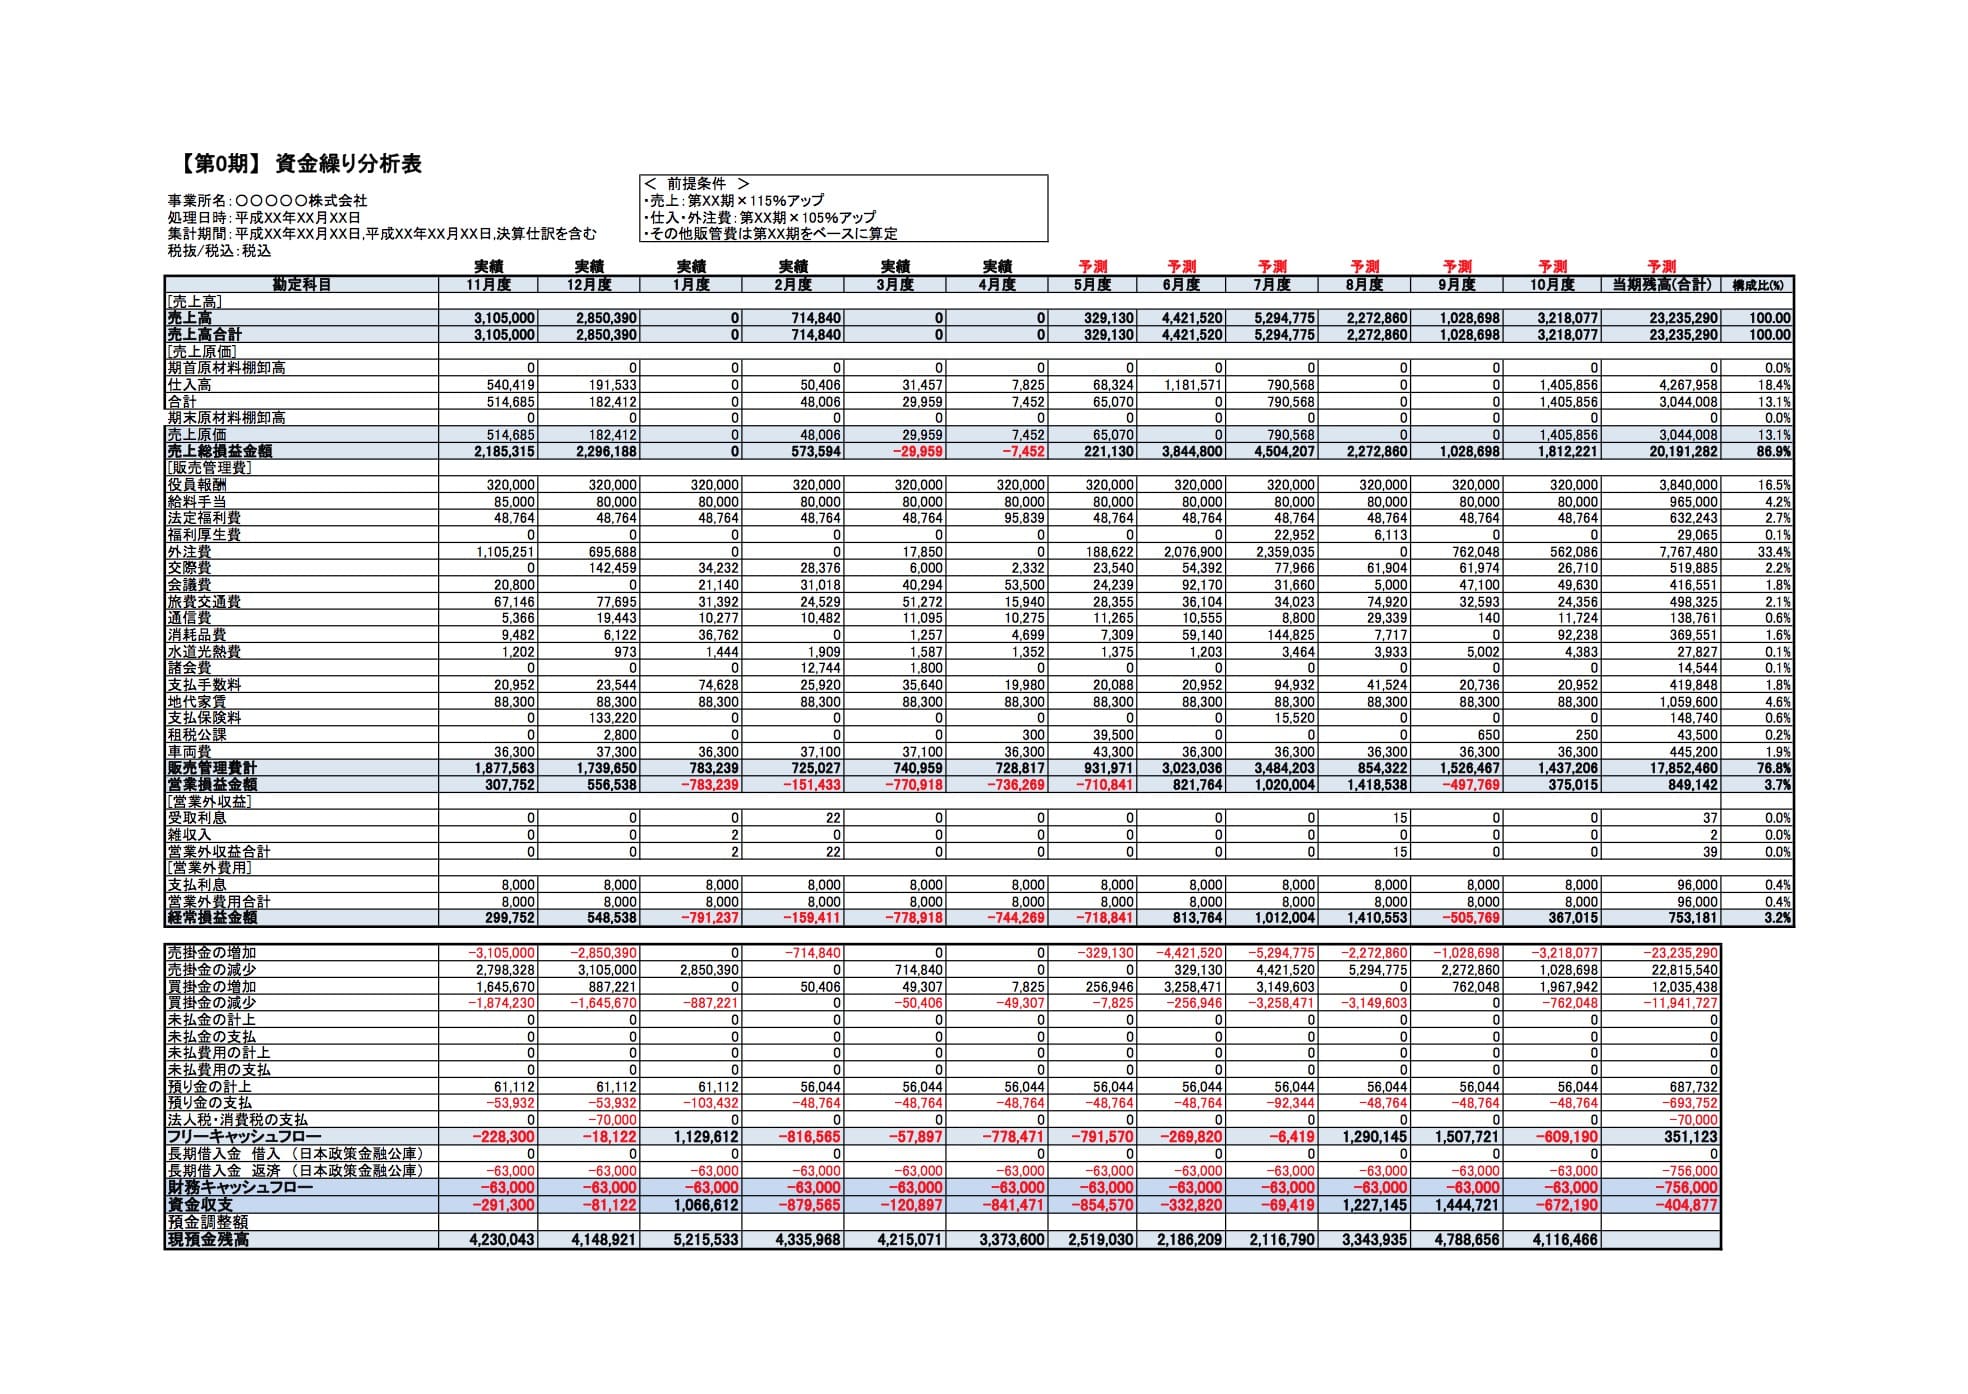 資金繰り分析表見本（PDF）